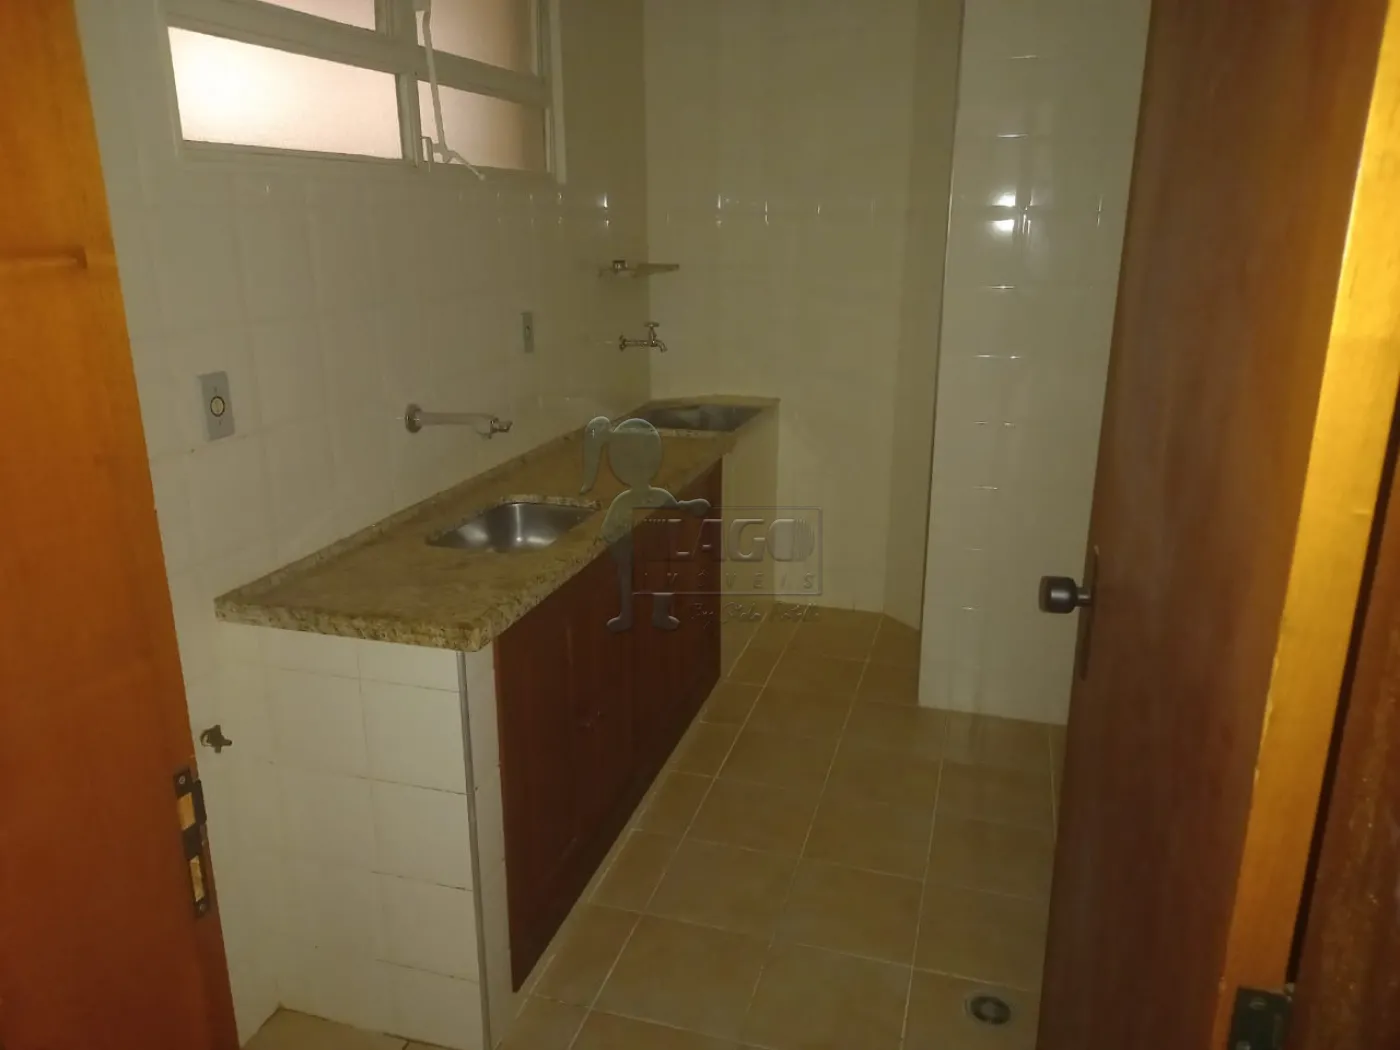 Alugar Apartamento / Padrão em Ribeirão Preto R$ 750,00 - Foto 4